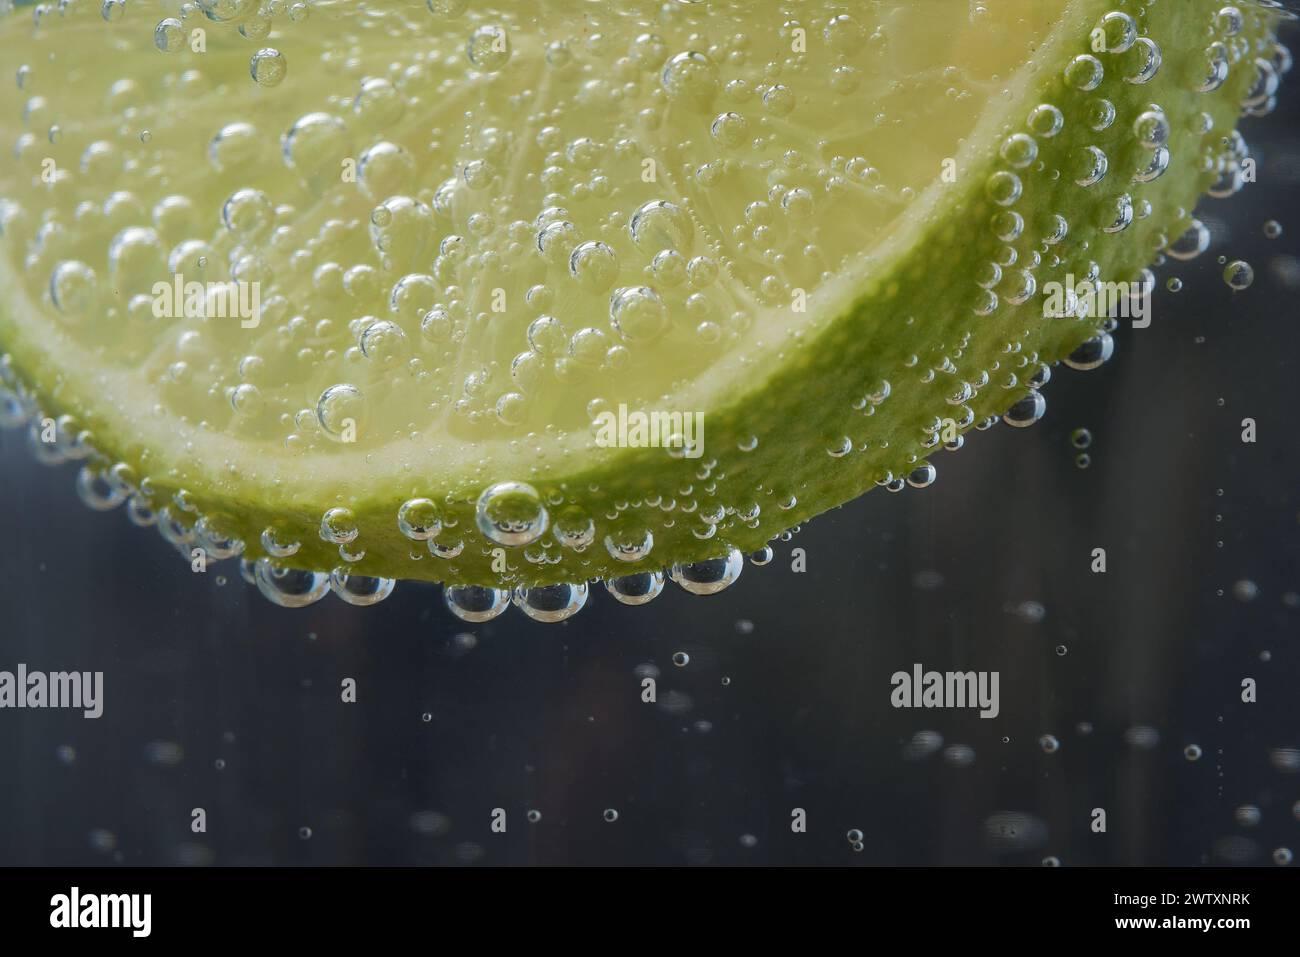 Foto einer Scheibe Zitrone oder Limette in Mineralwasser auf dunklem Hintergrund. Schließen Sie die Zitrone mit Wasserblasen Stockfoto